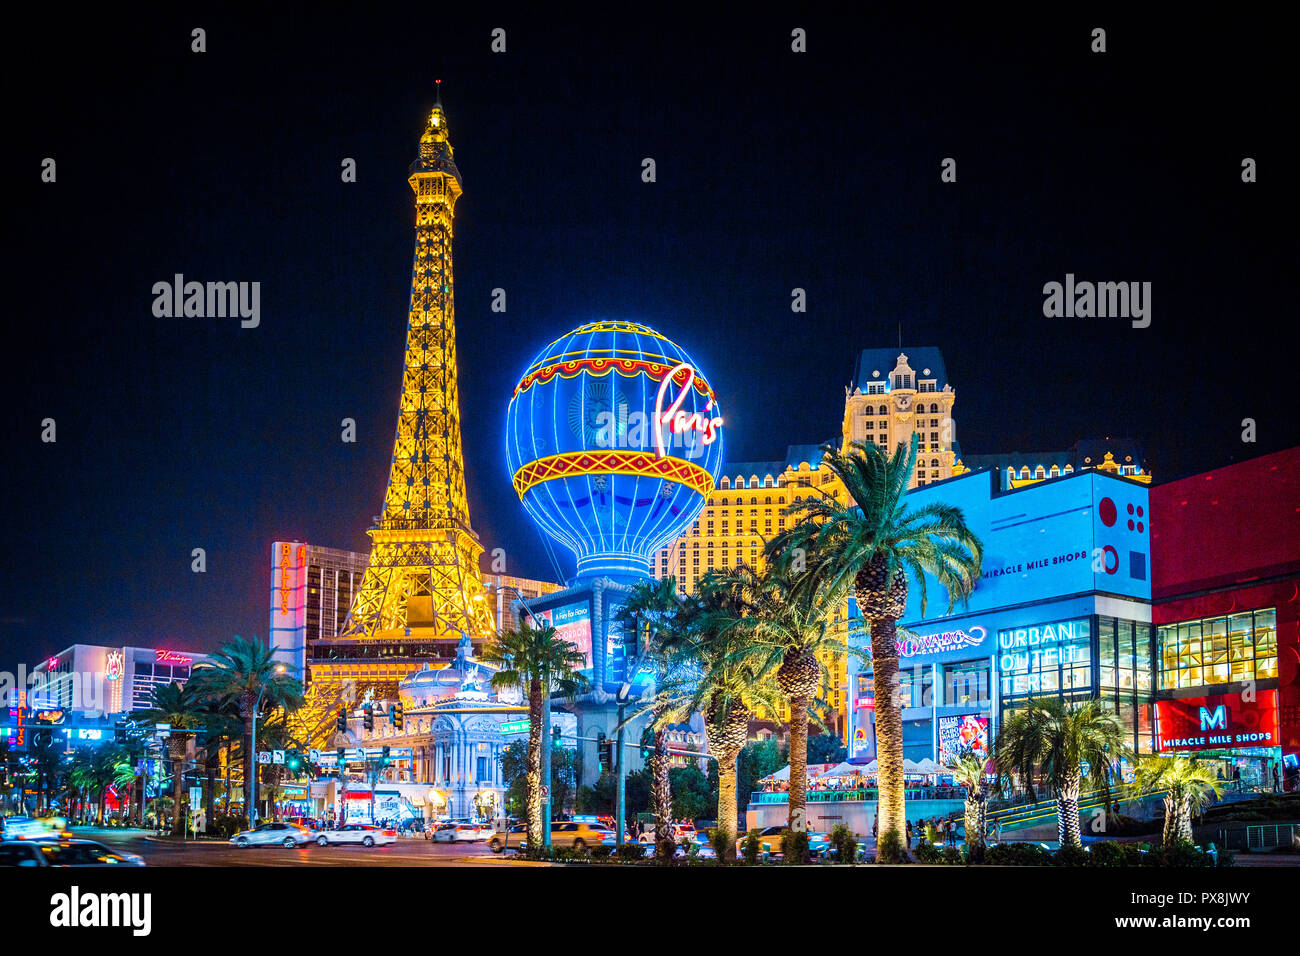 Settembre 20, 2017 - LAS VEGAS: vista classica di coloratissimi Downtown Las Vegas con la famosa Strip e Paris Las Vegas hotel e complesso di casinò di notte Foto Stock